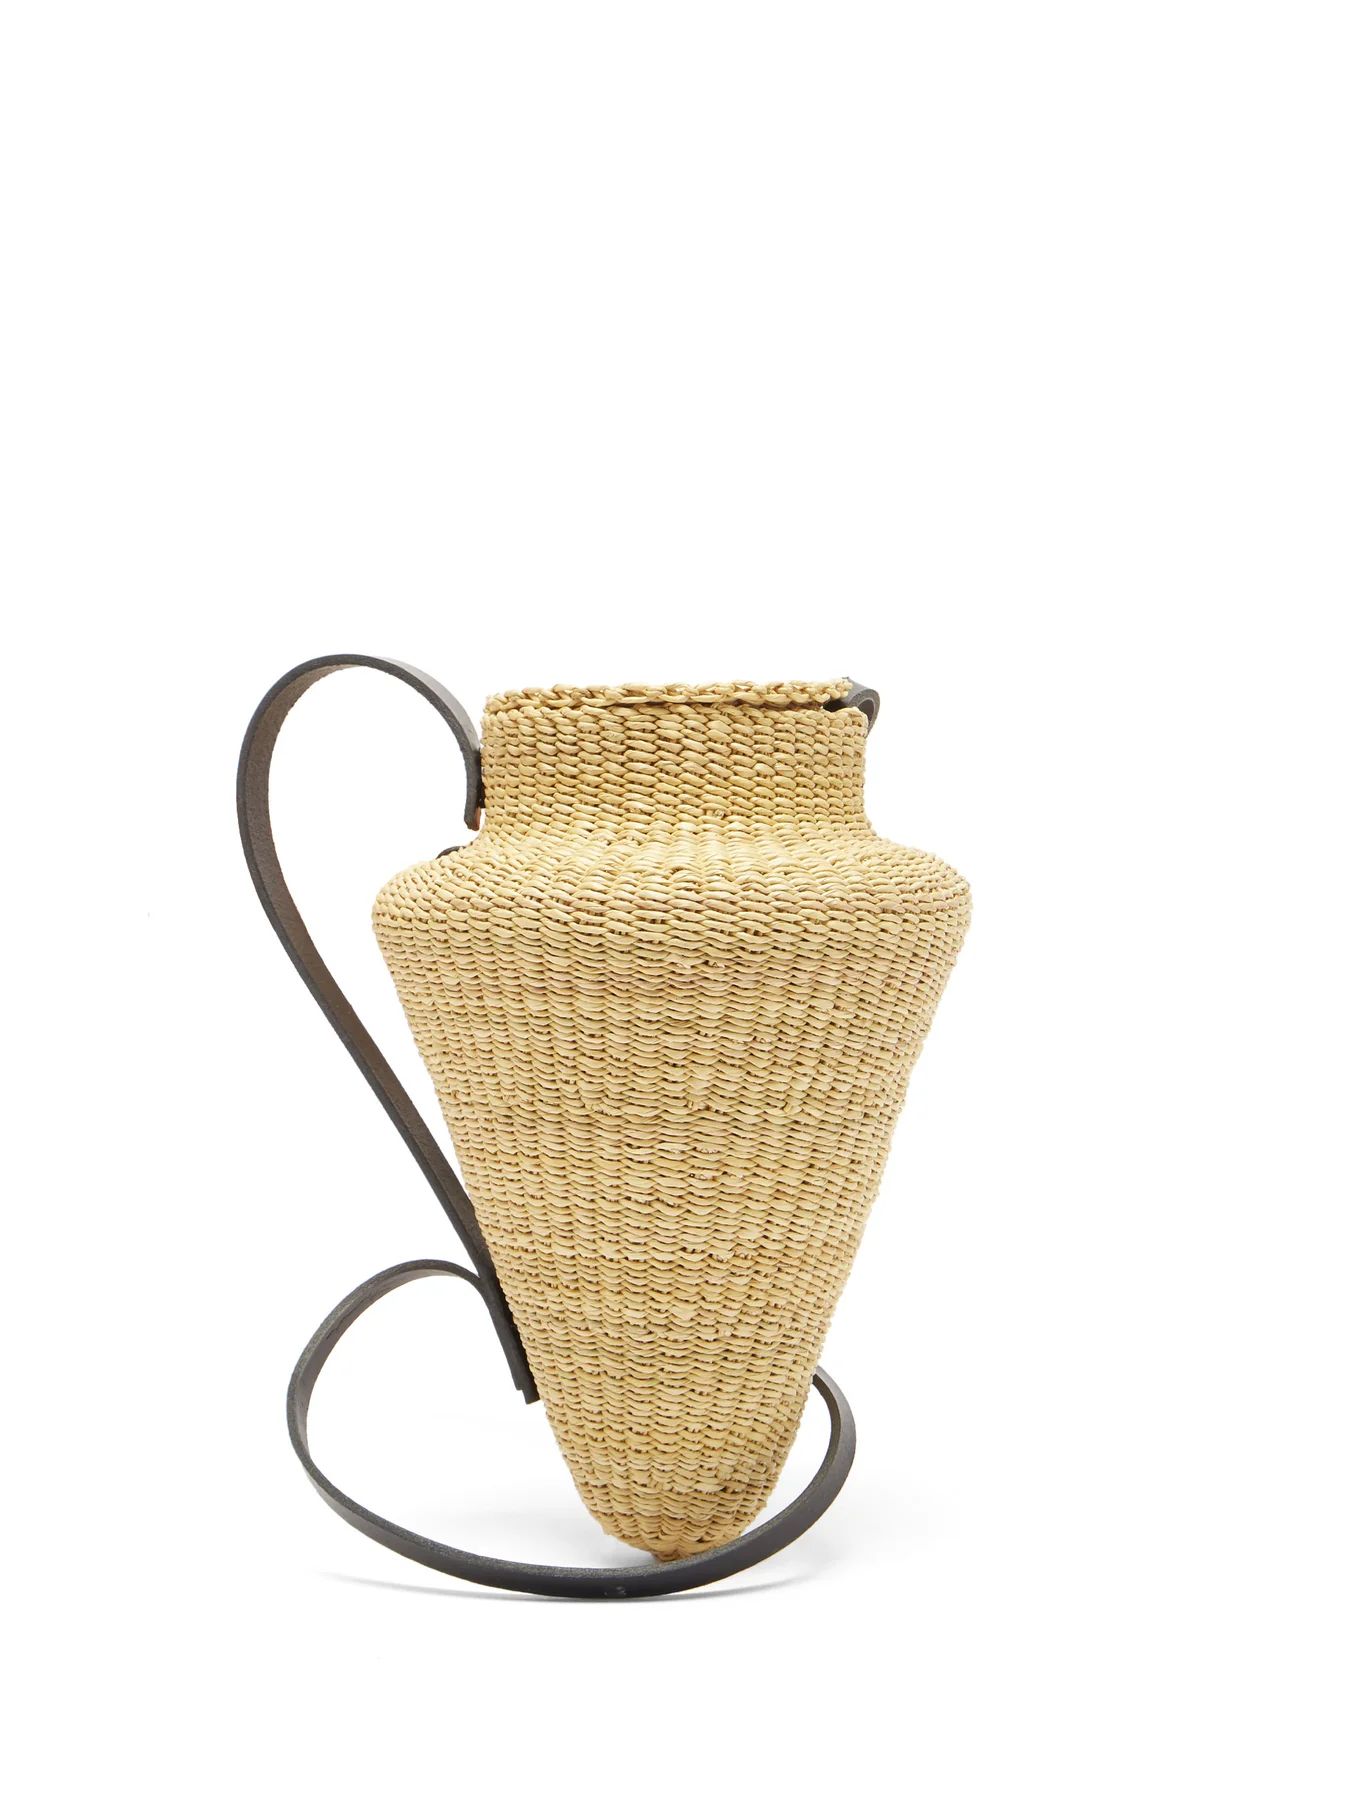 N.17 Grande Amphore straw basket bag | Inès Bressand | Matches (US)